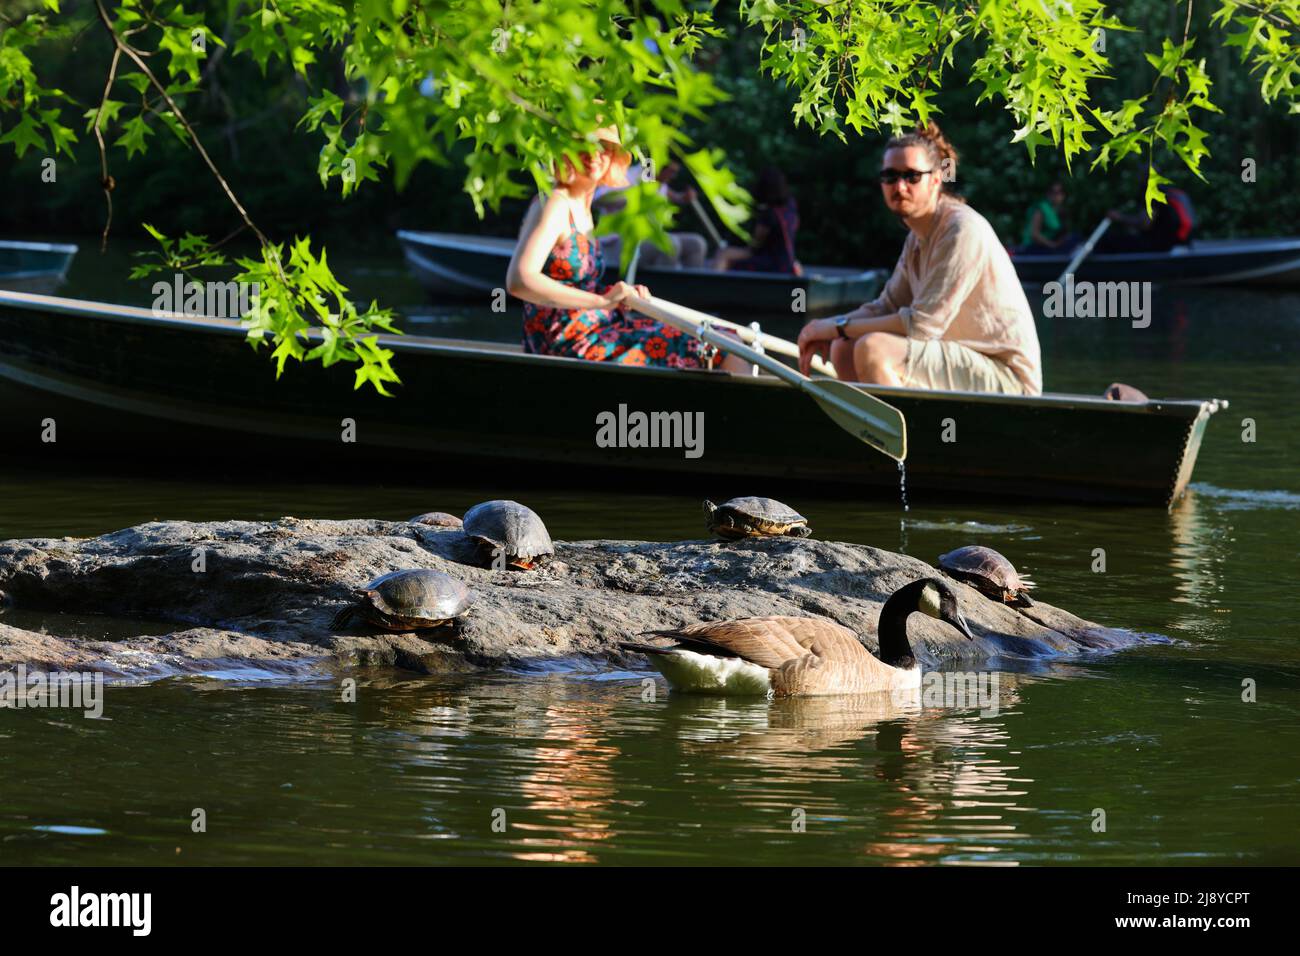 Menschen in einem Ruderboot fahren an Teichgleitern vorbei, einschließlich Rotohrgleitern (Trachemys scripta), die auf einem Felsen im Lake im Central Park, New York, sonnen. Stockfoto